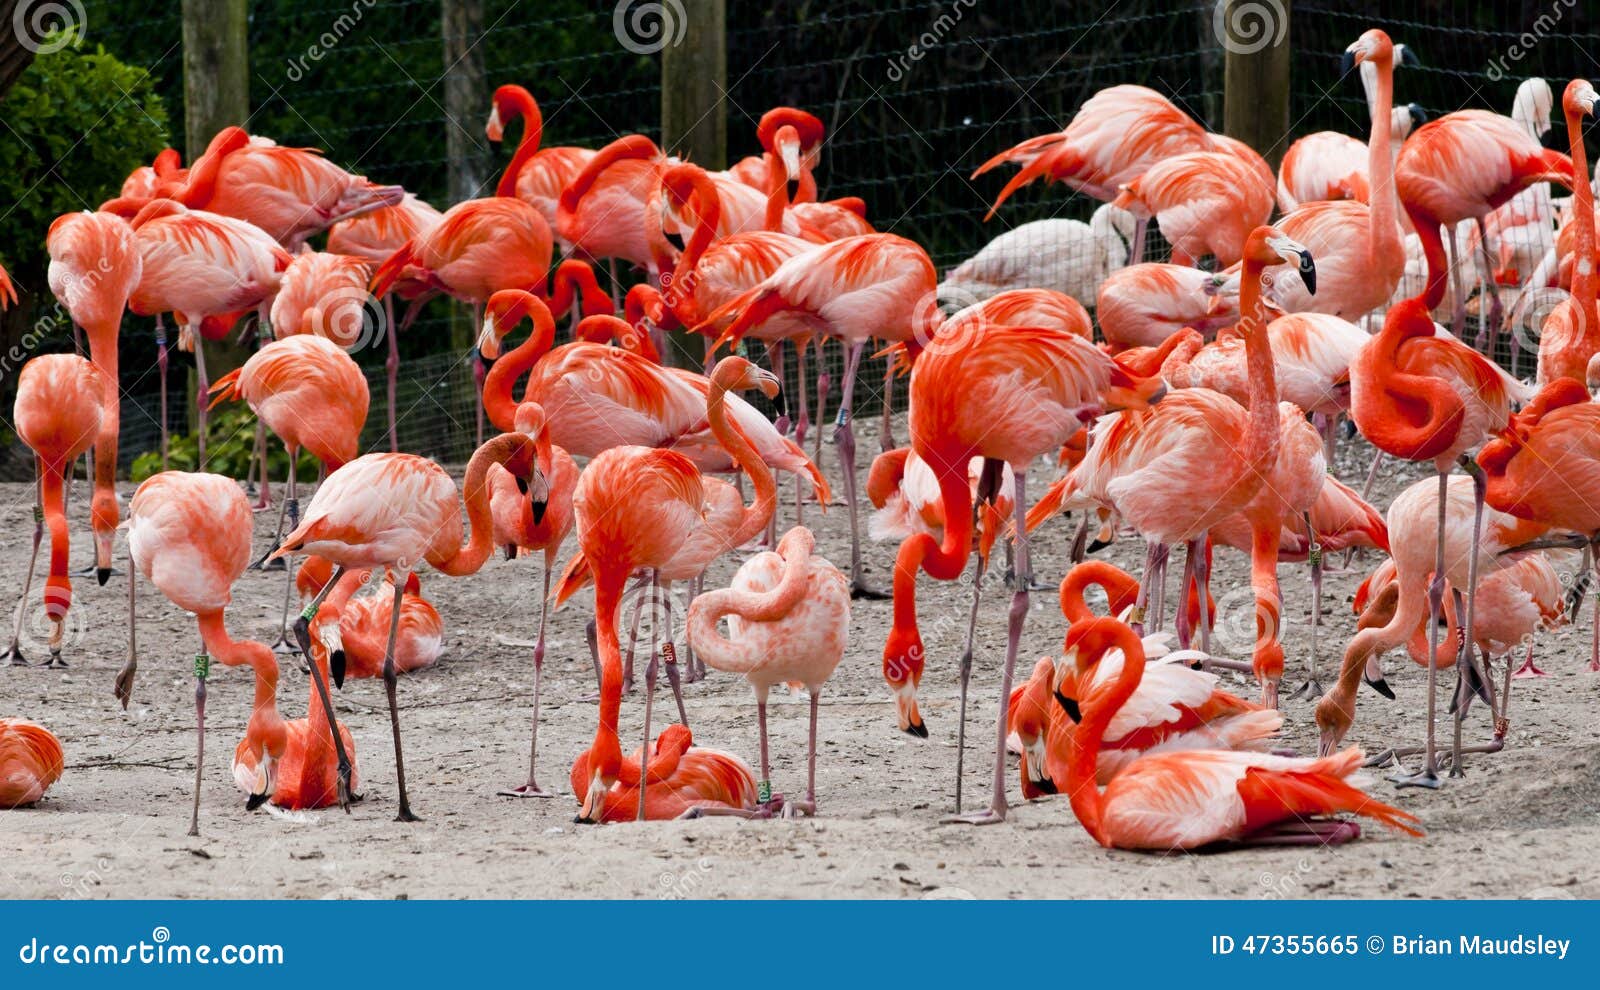 flock of carribean flamingoes